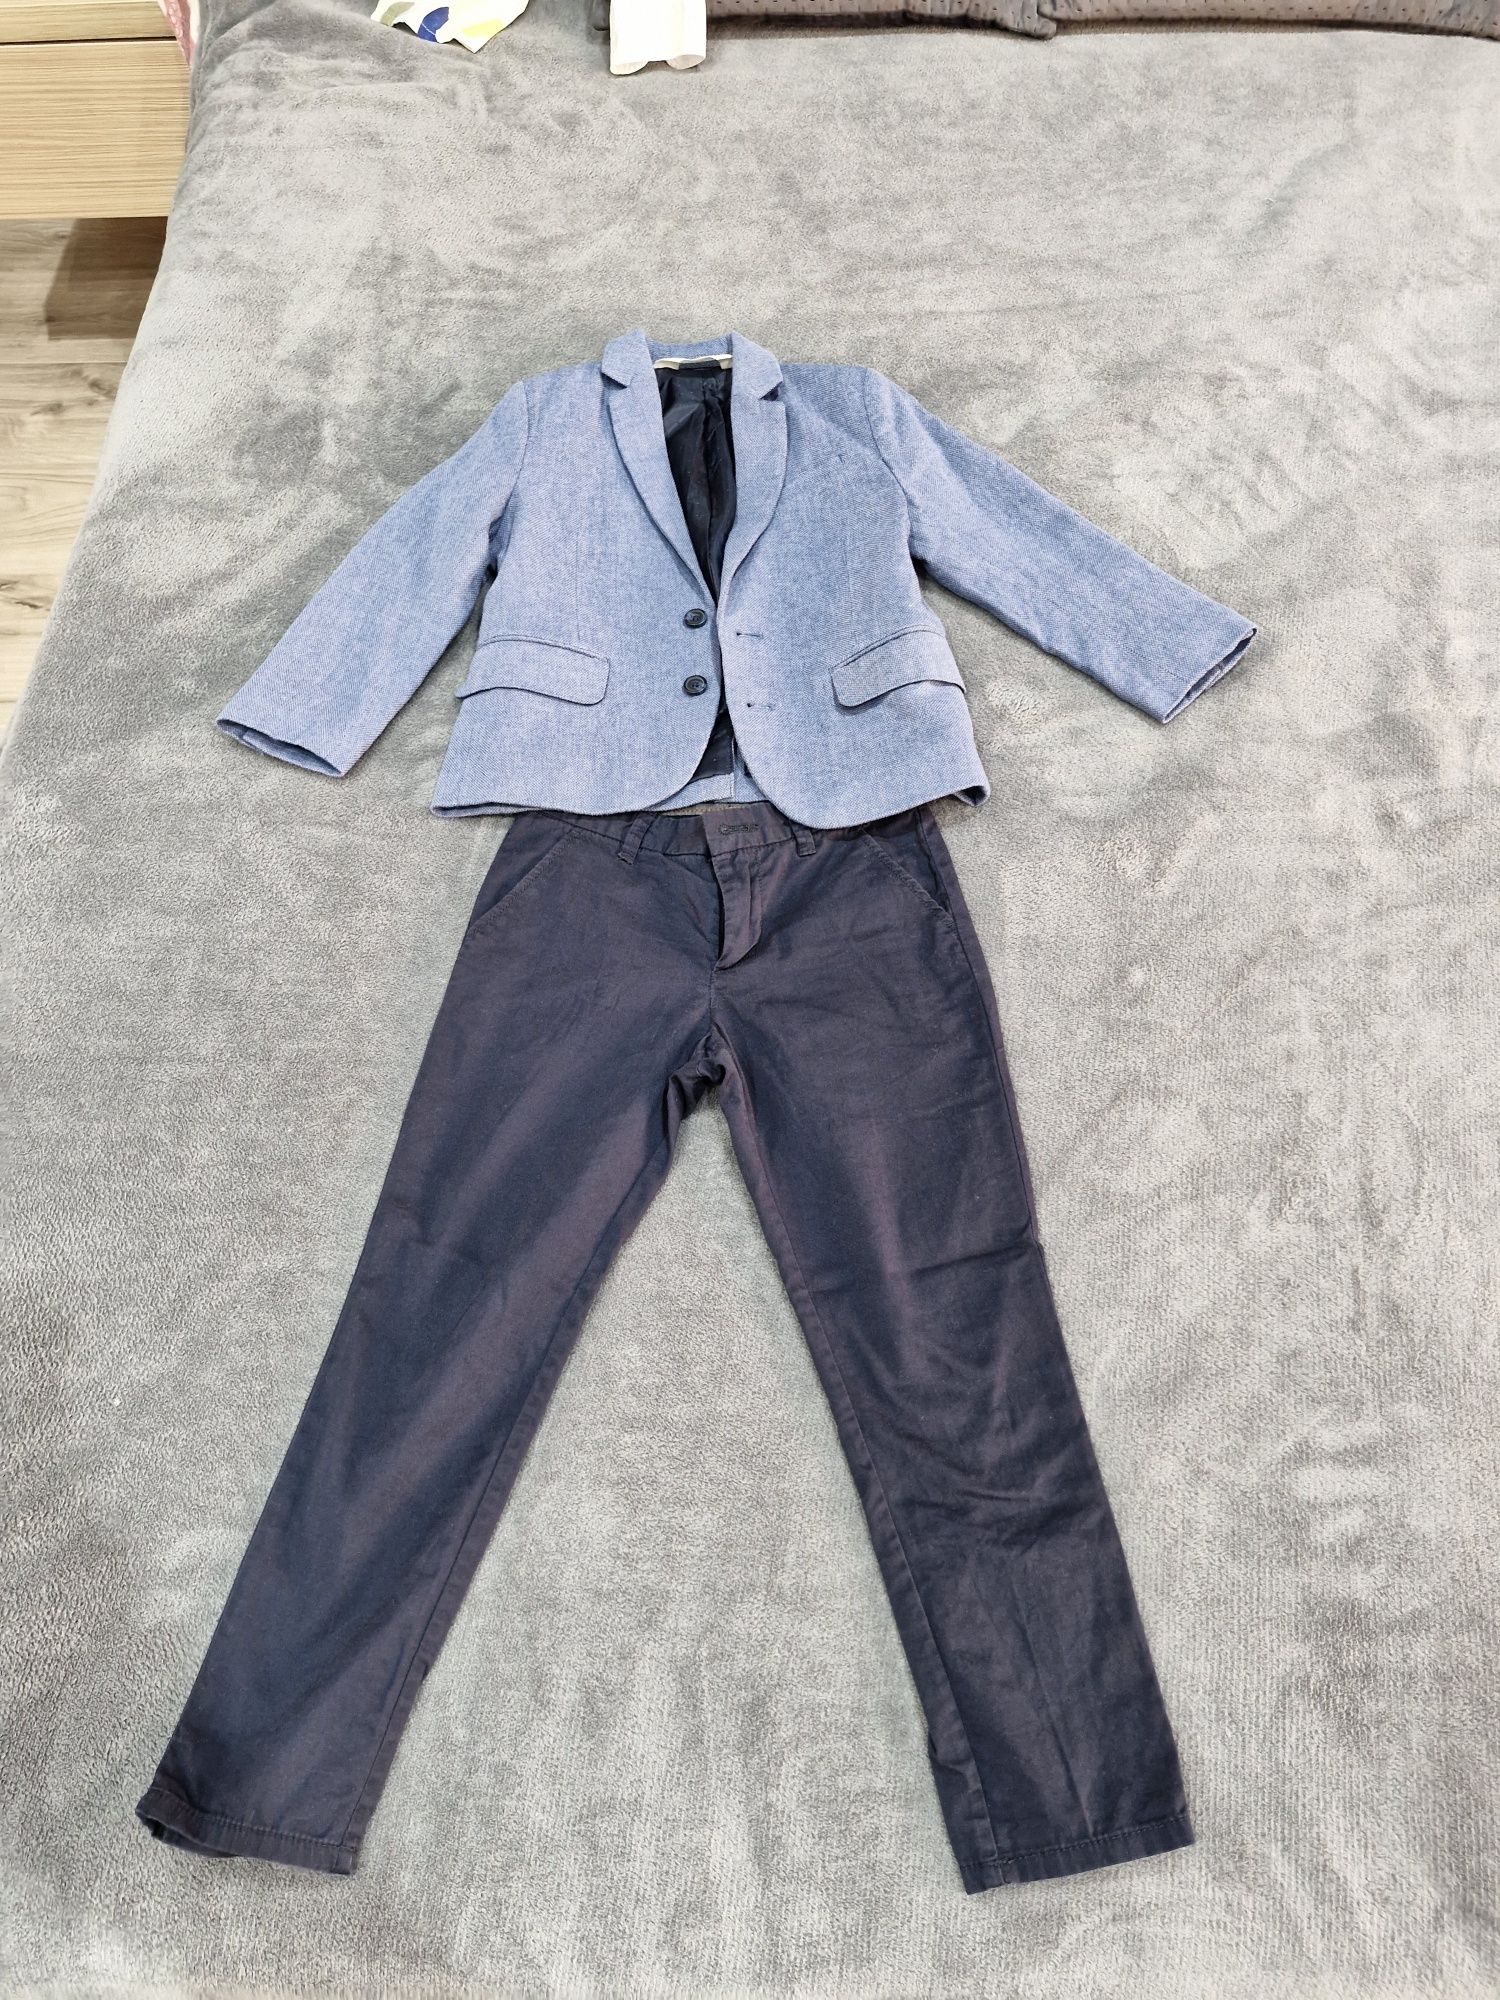 Sacou, pantalon și cămașa H&M băiețel mărimea 110 /4-5 ani